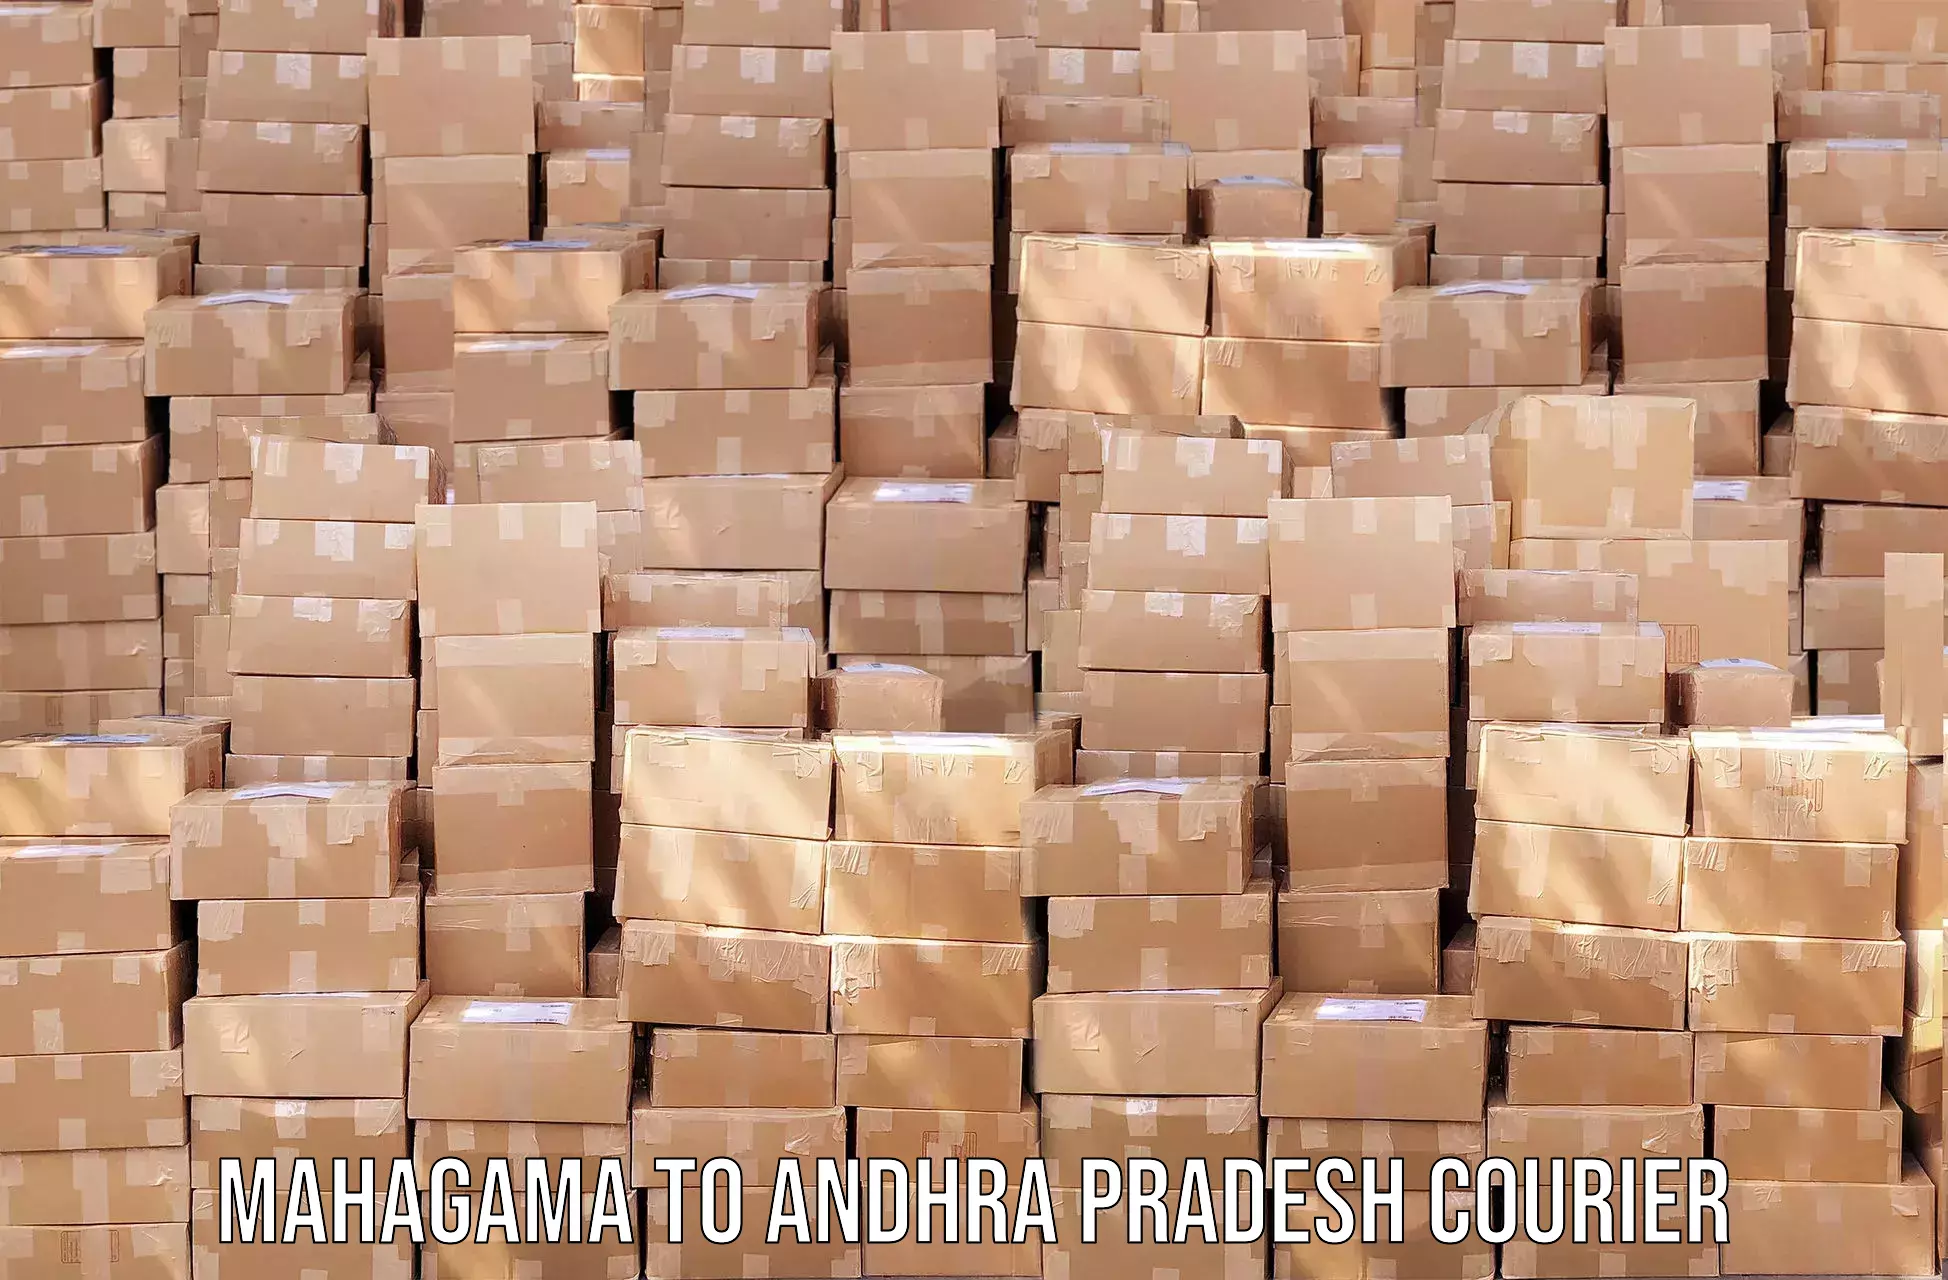 Return courier service Mahagama to Andhra Pradesh